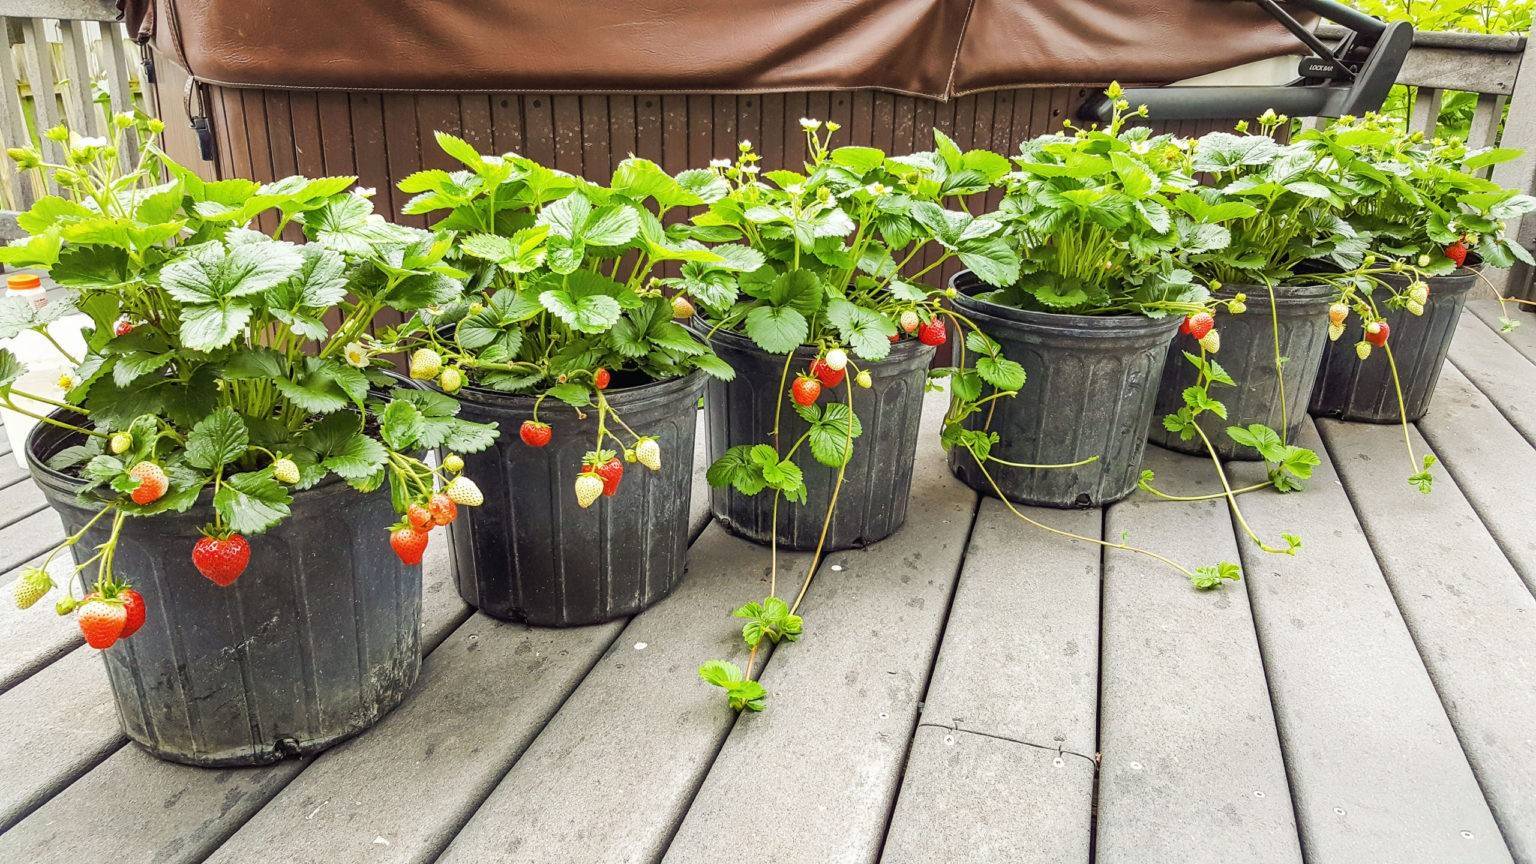 Секреты выращивания садовой клубники в кашпо: как получить самый ранний урожай ягод